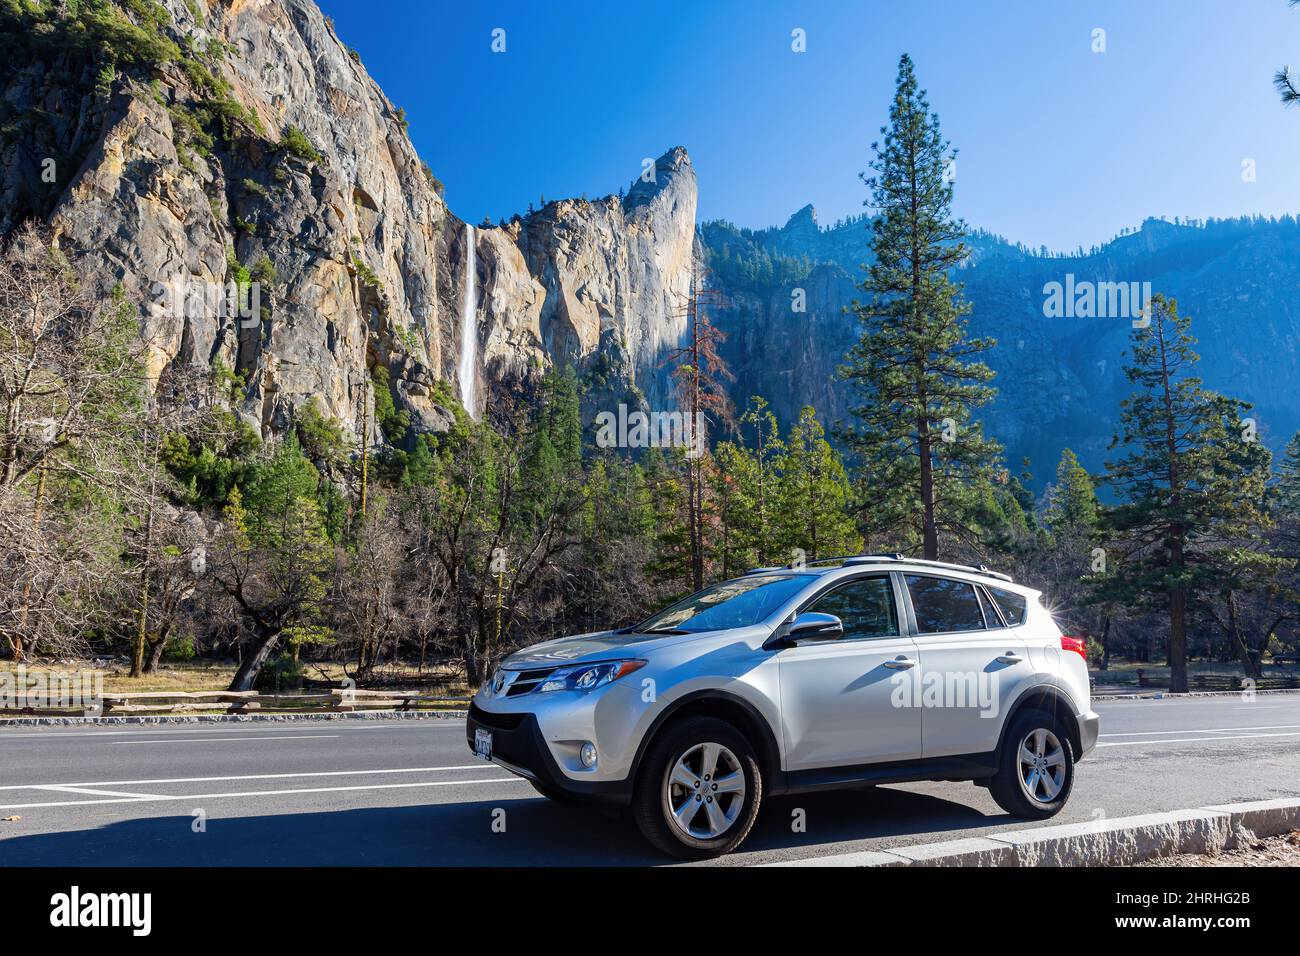 Kalifornien, FEB 19 2015 - Sonnenansicht eines Toyota RAV4 Autos im Yosemite Nationalpark Stockfoto